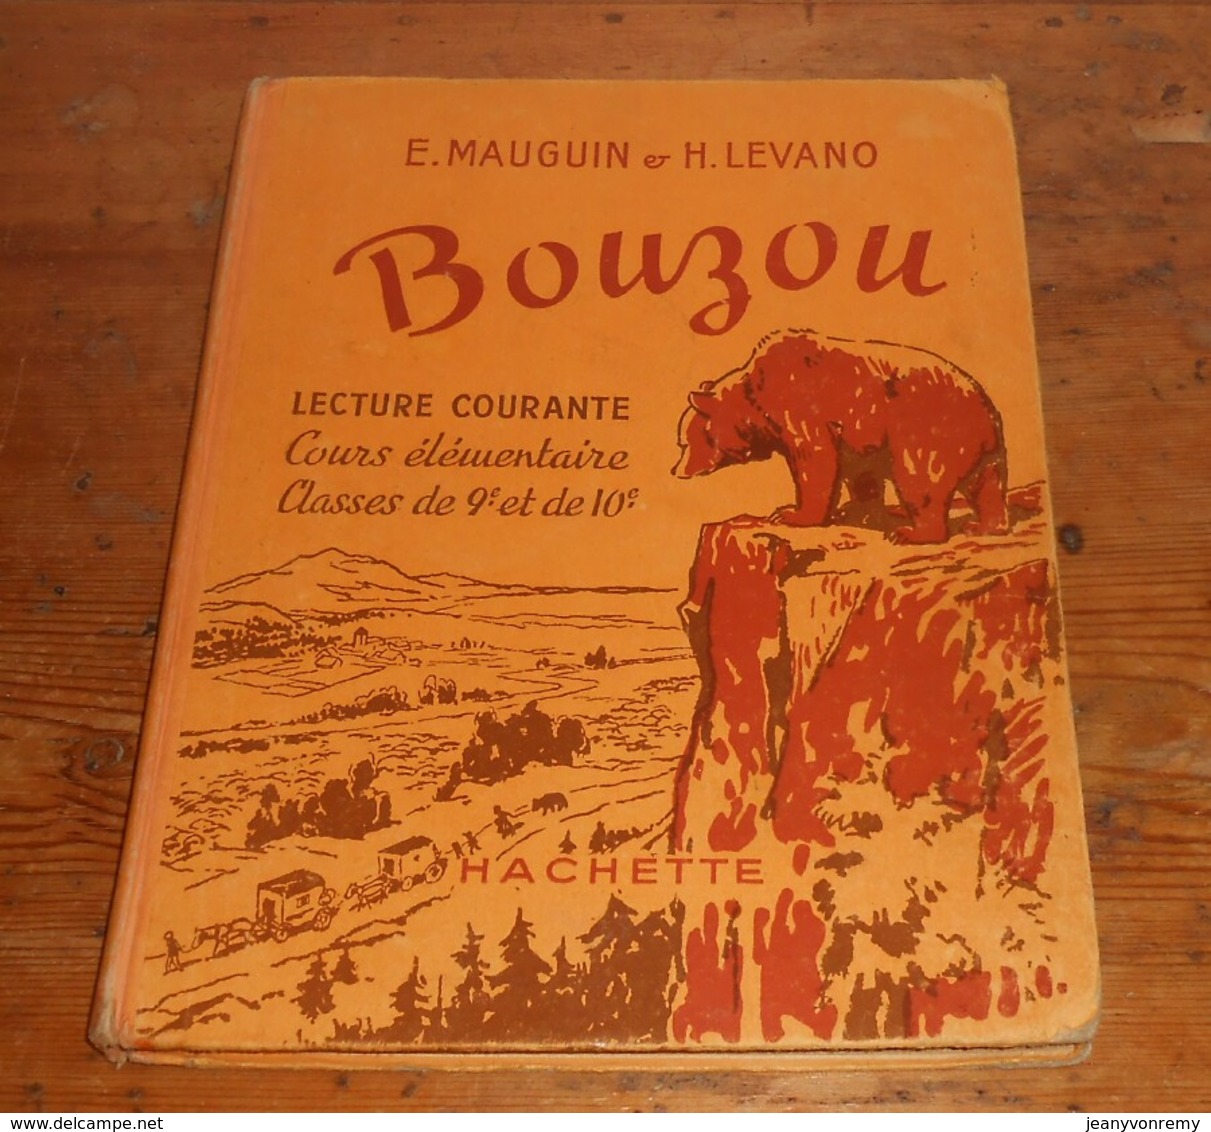 Histoire De Bouzou, Le Petit Enfant D'ours. 1950. - Hachette